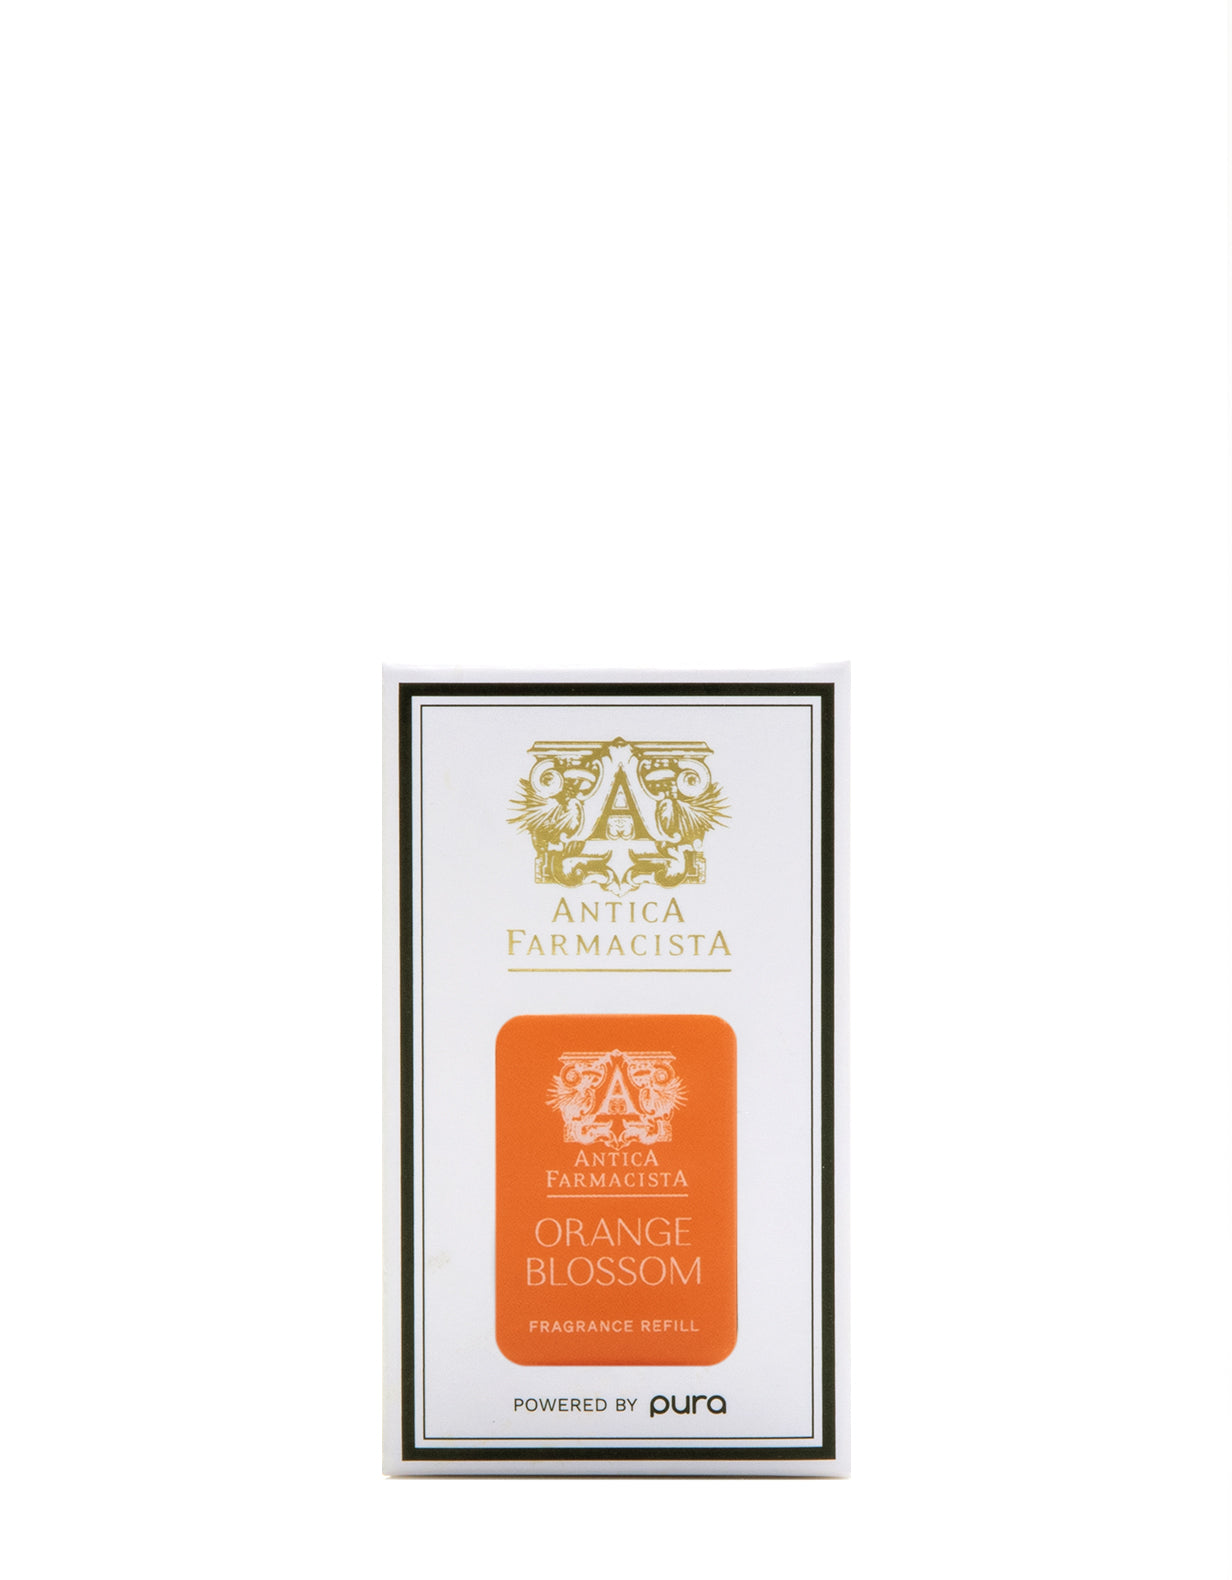 Orange Blossom Pura Fragrance Refill | Antica Farmacista